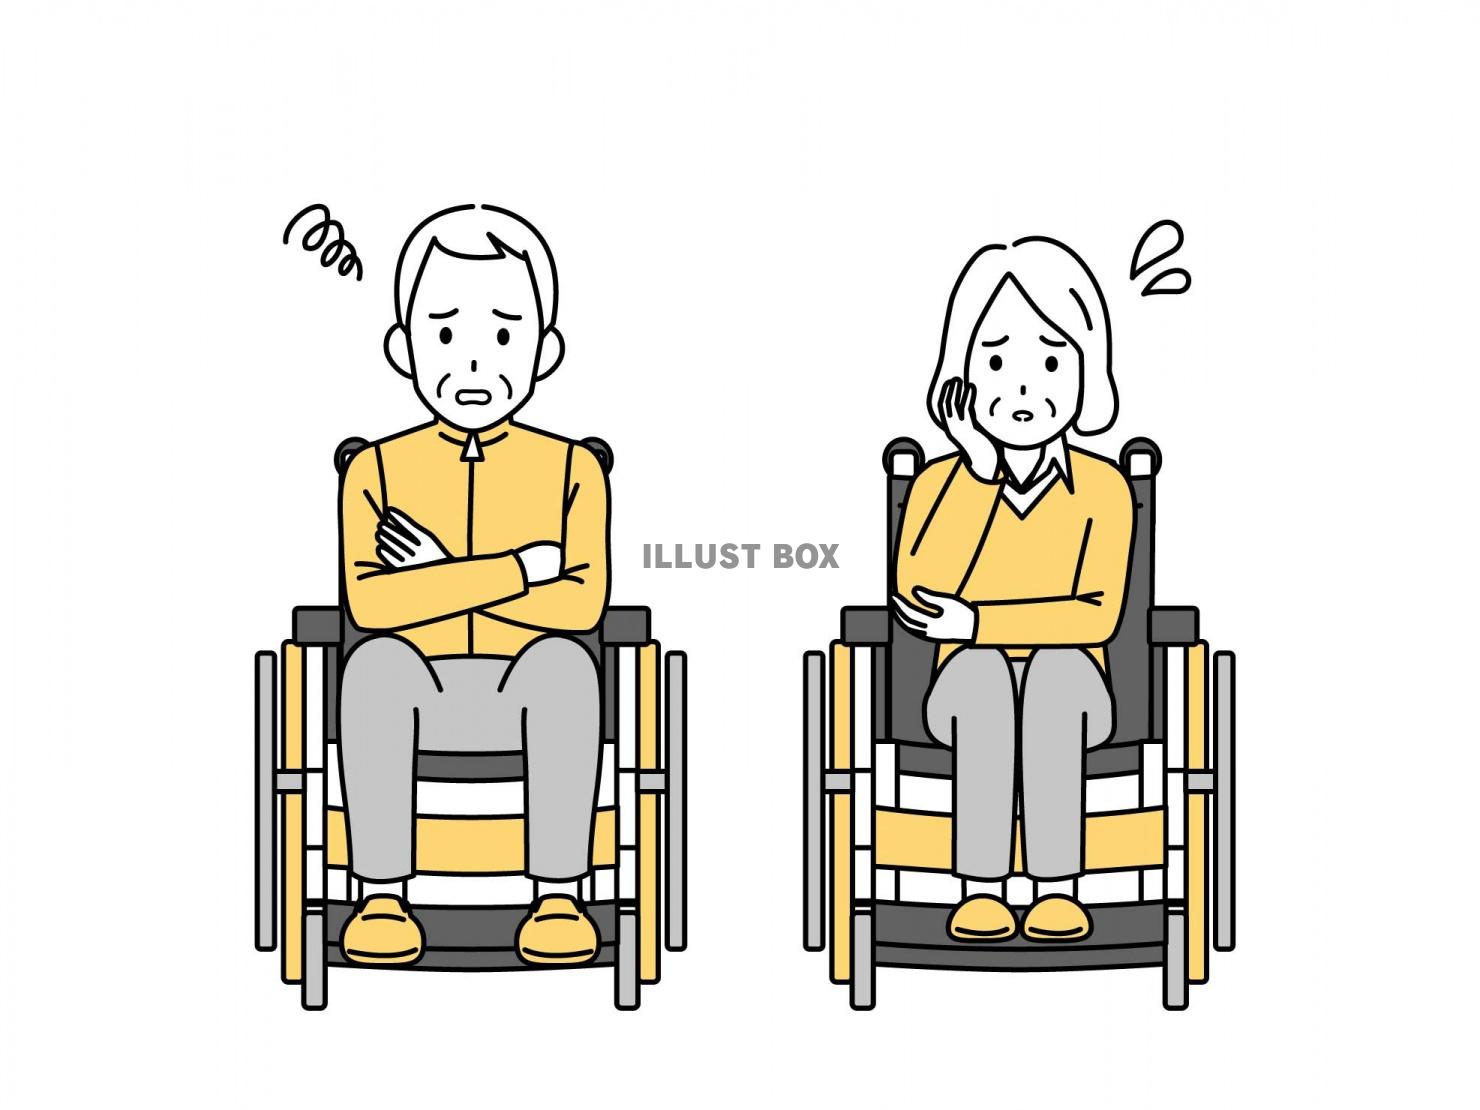 車椅子を使う困る表情をした高齢者のイラスト